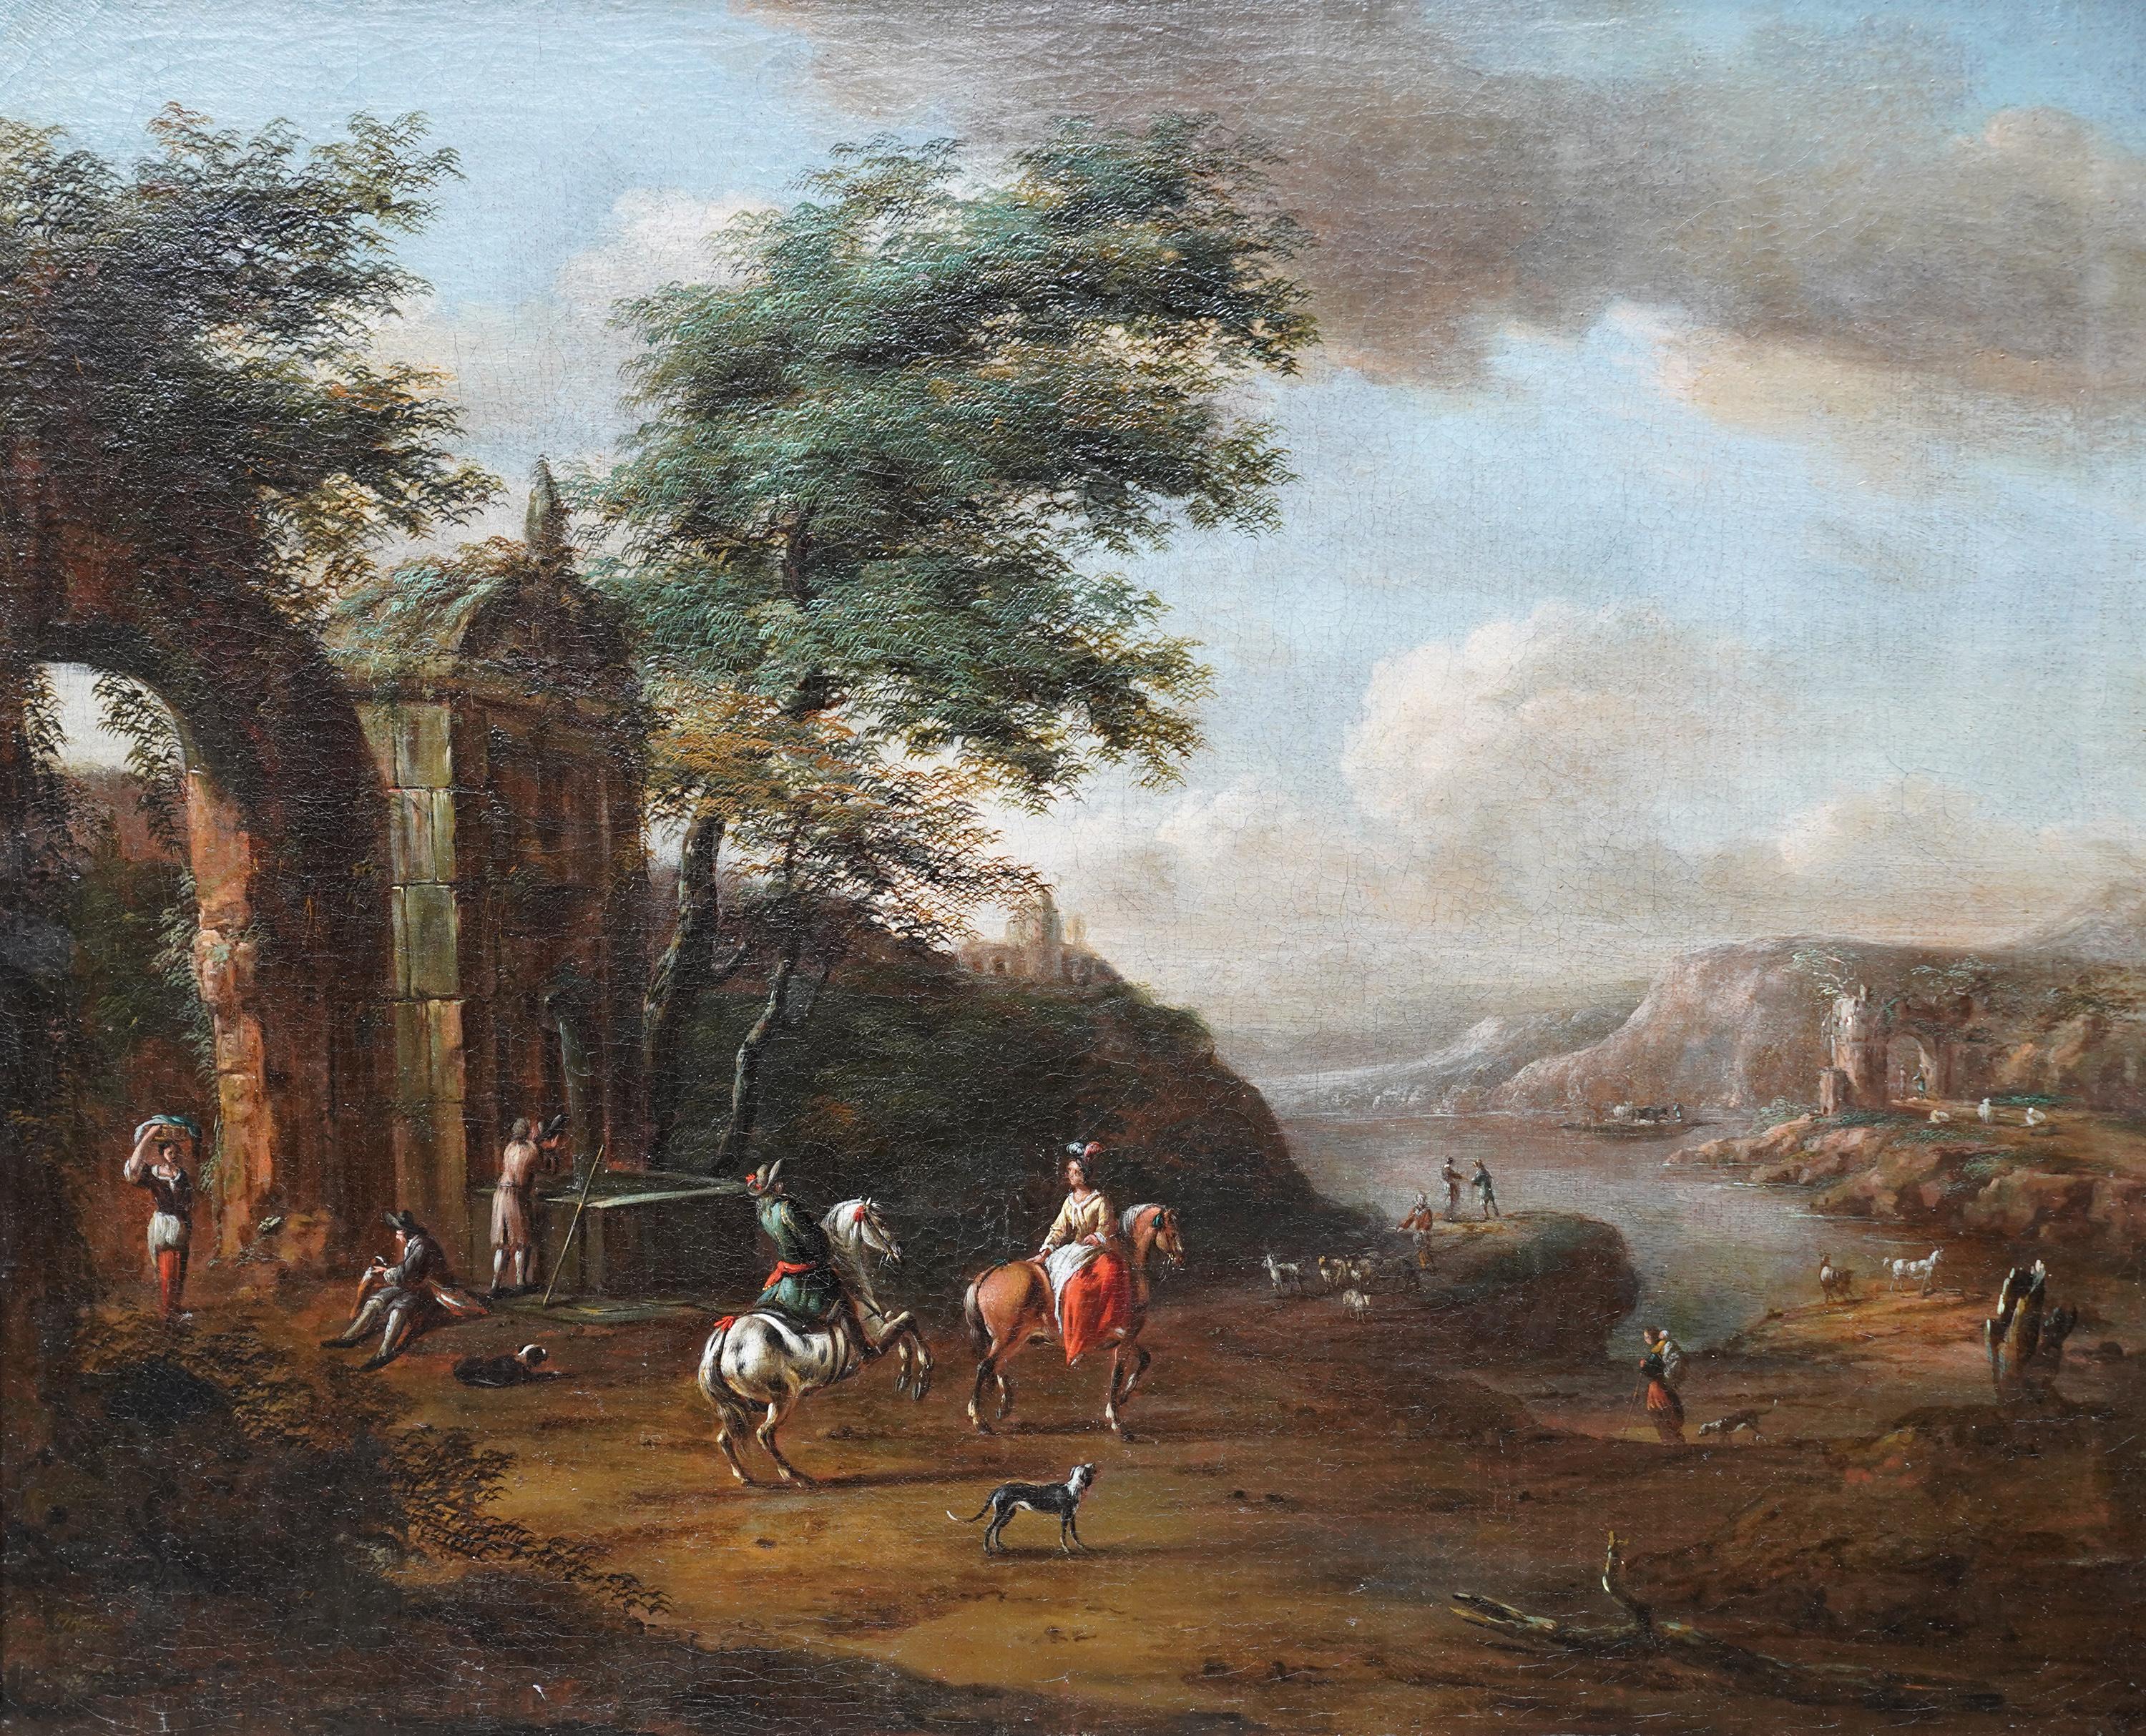 Reisende in der Nähe von Ruinen in einer Landschaft – niederländisches figurales Ölgemälde eines alten Meisters – Painting von Pieter Wouwerman